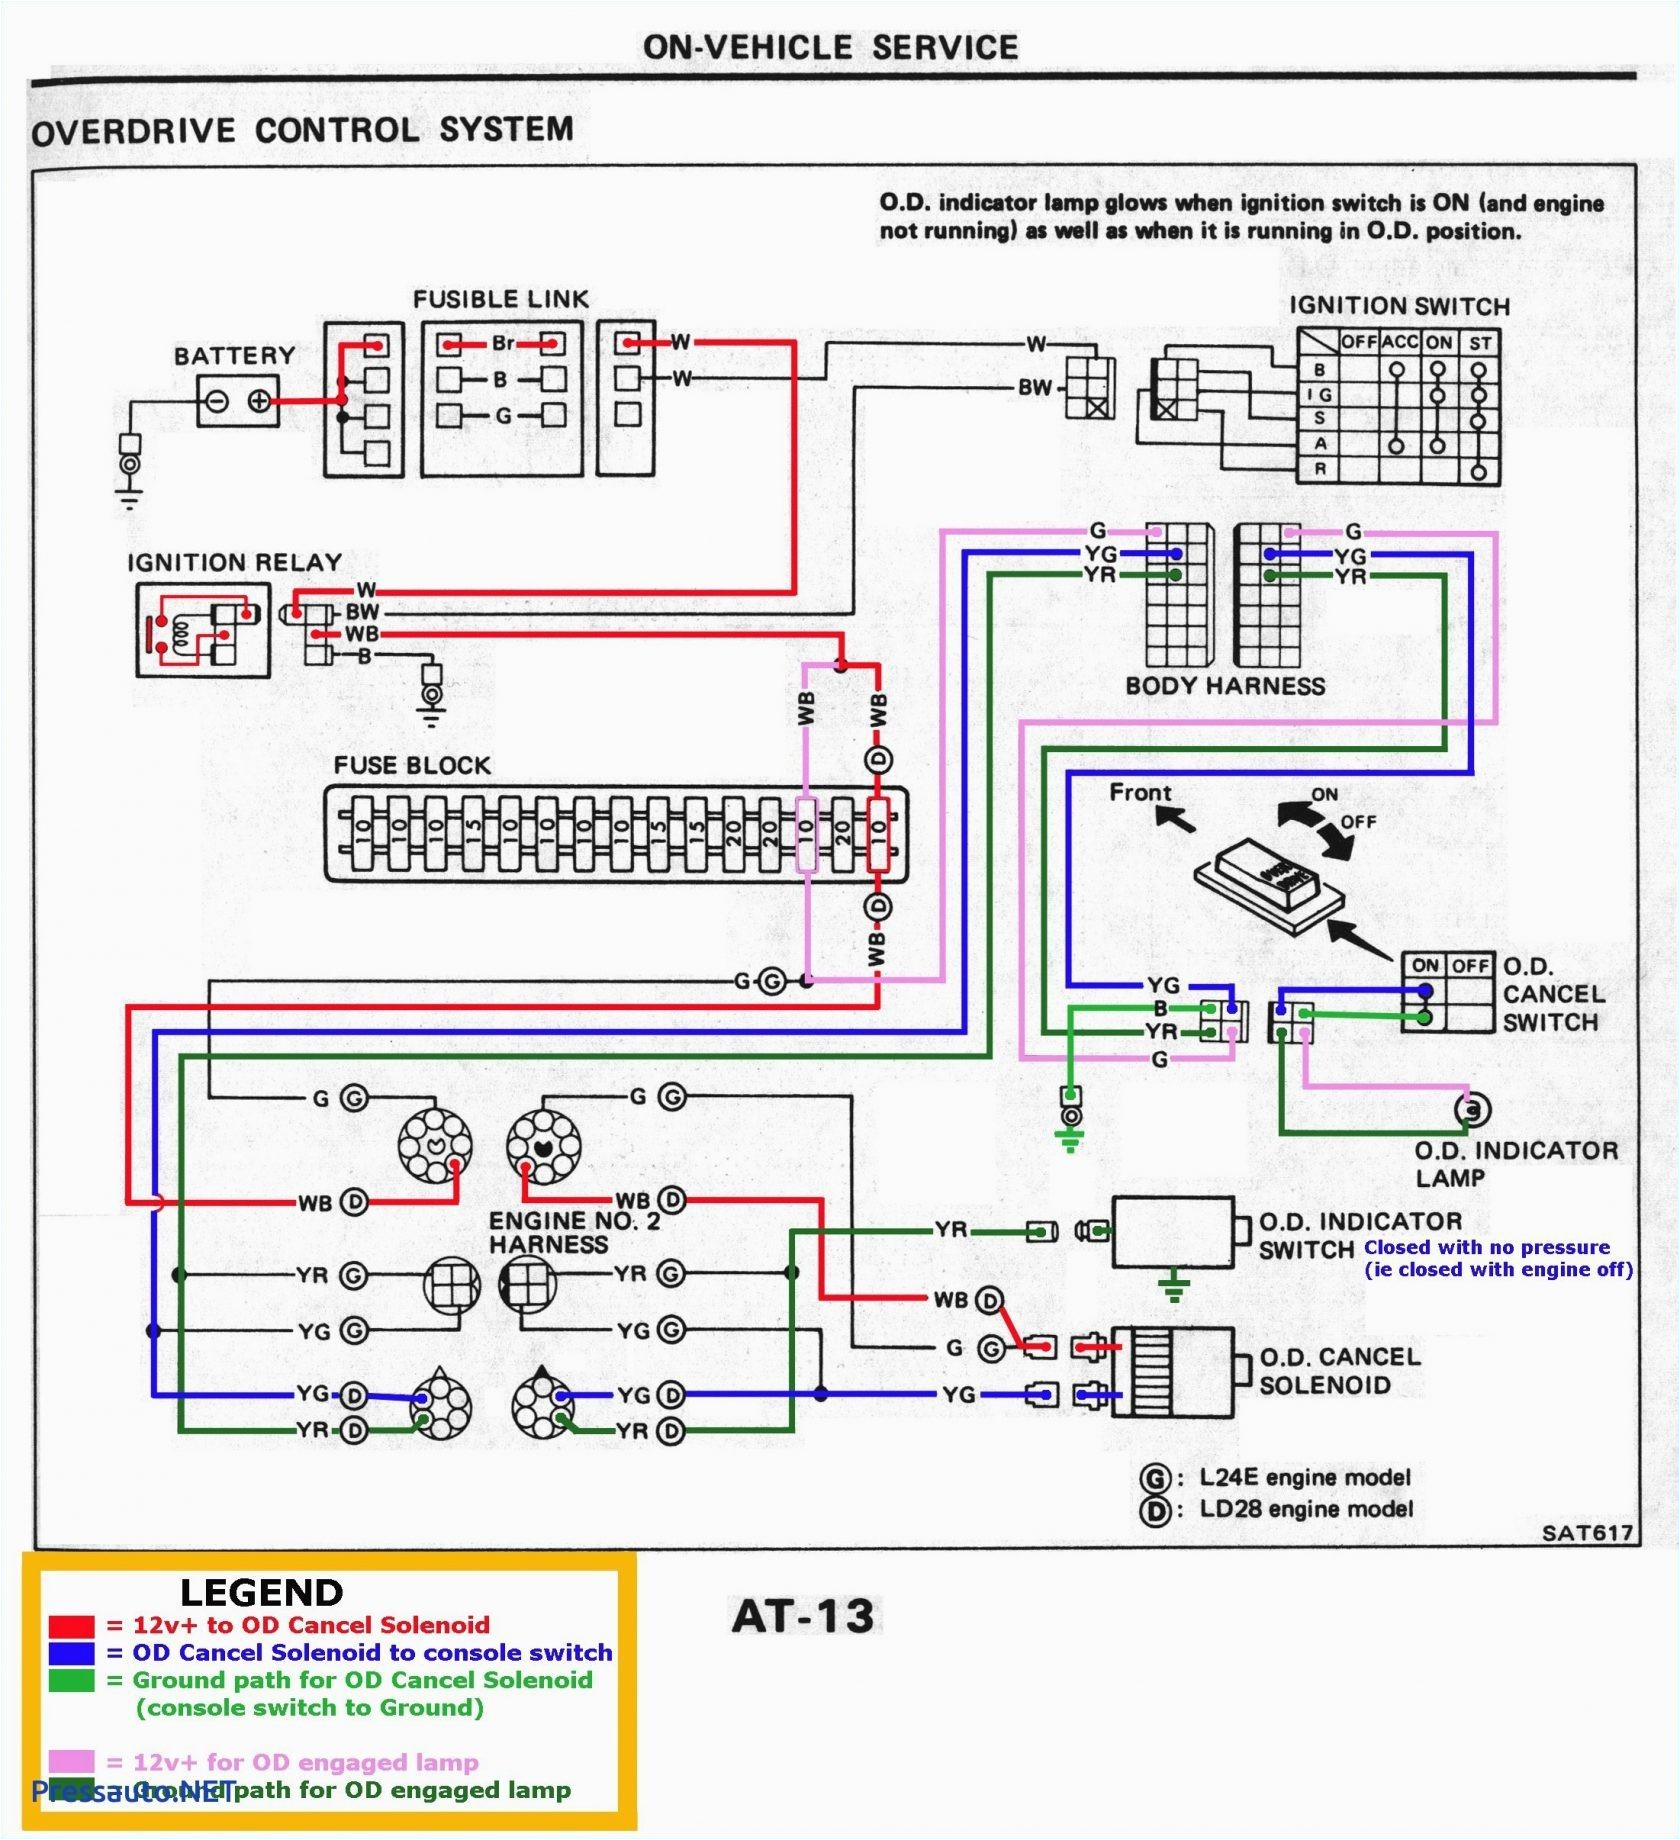 32 volt light wire schematic wiring diagram 32 volt light wire schematic